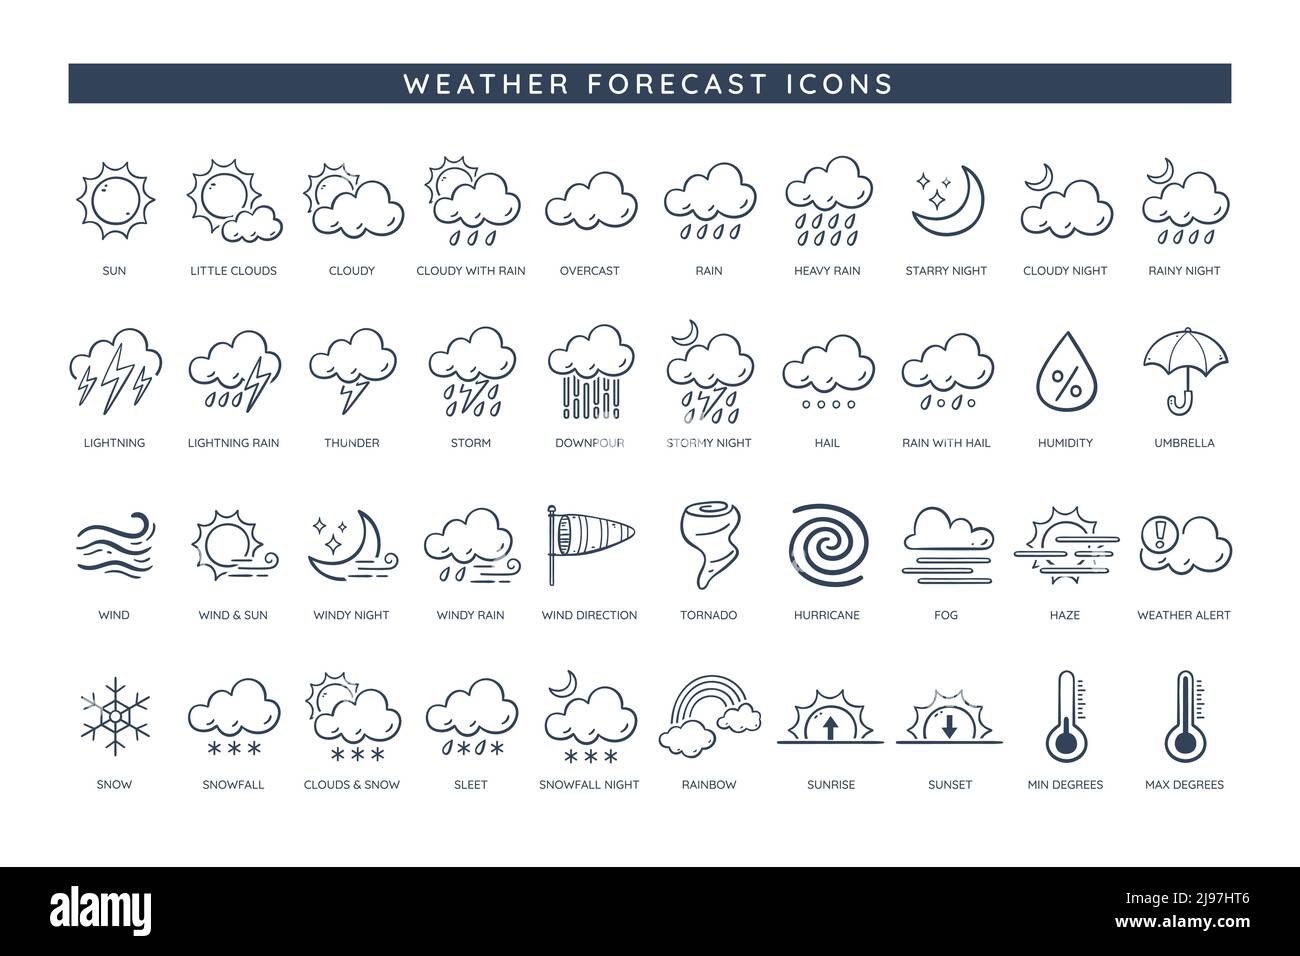 Wettersymbole. Wetterprognosen-Symbol-Sammlung. 50 Doodle-Symbole mit den häufigsten Indikationen in jedem meteorologischen Teil, wie Sonne, Regen, Wind, Stock Vektor